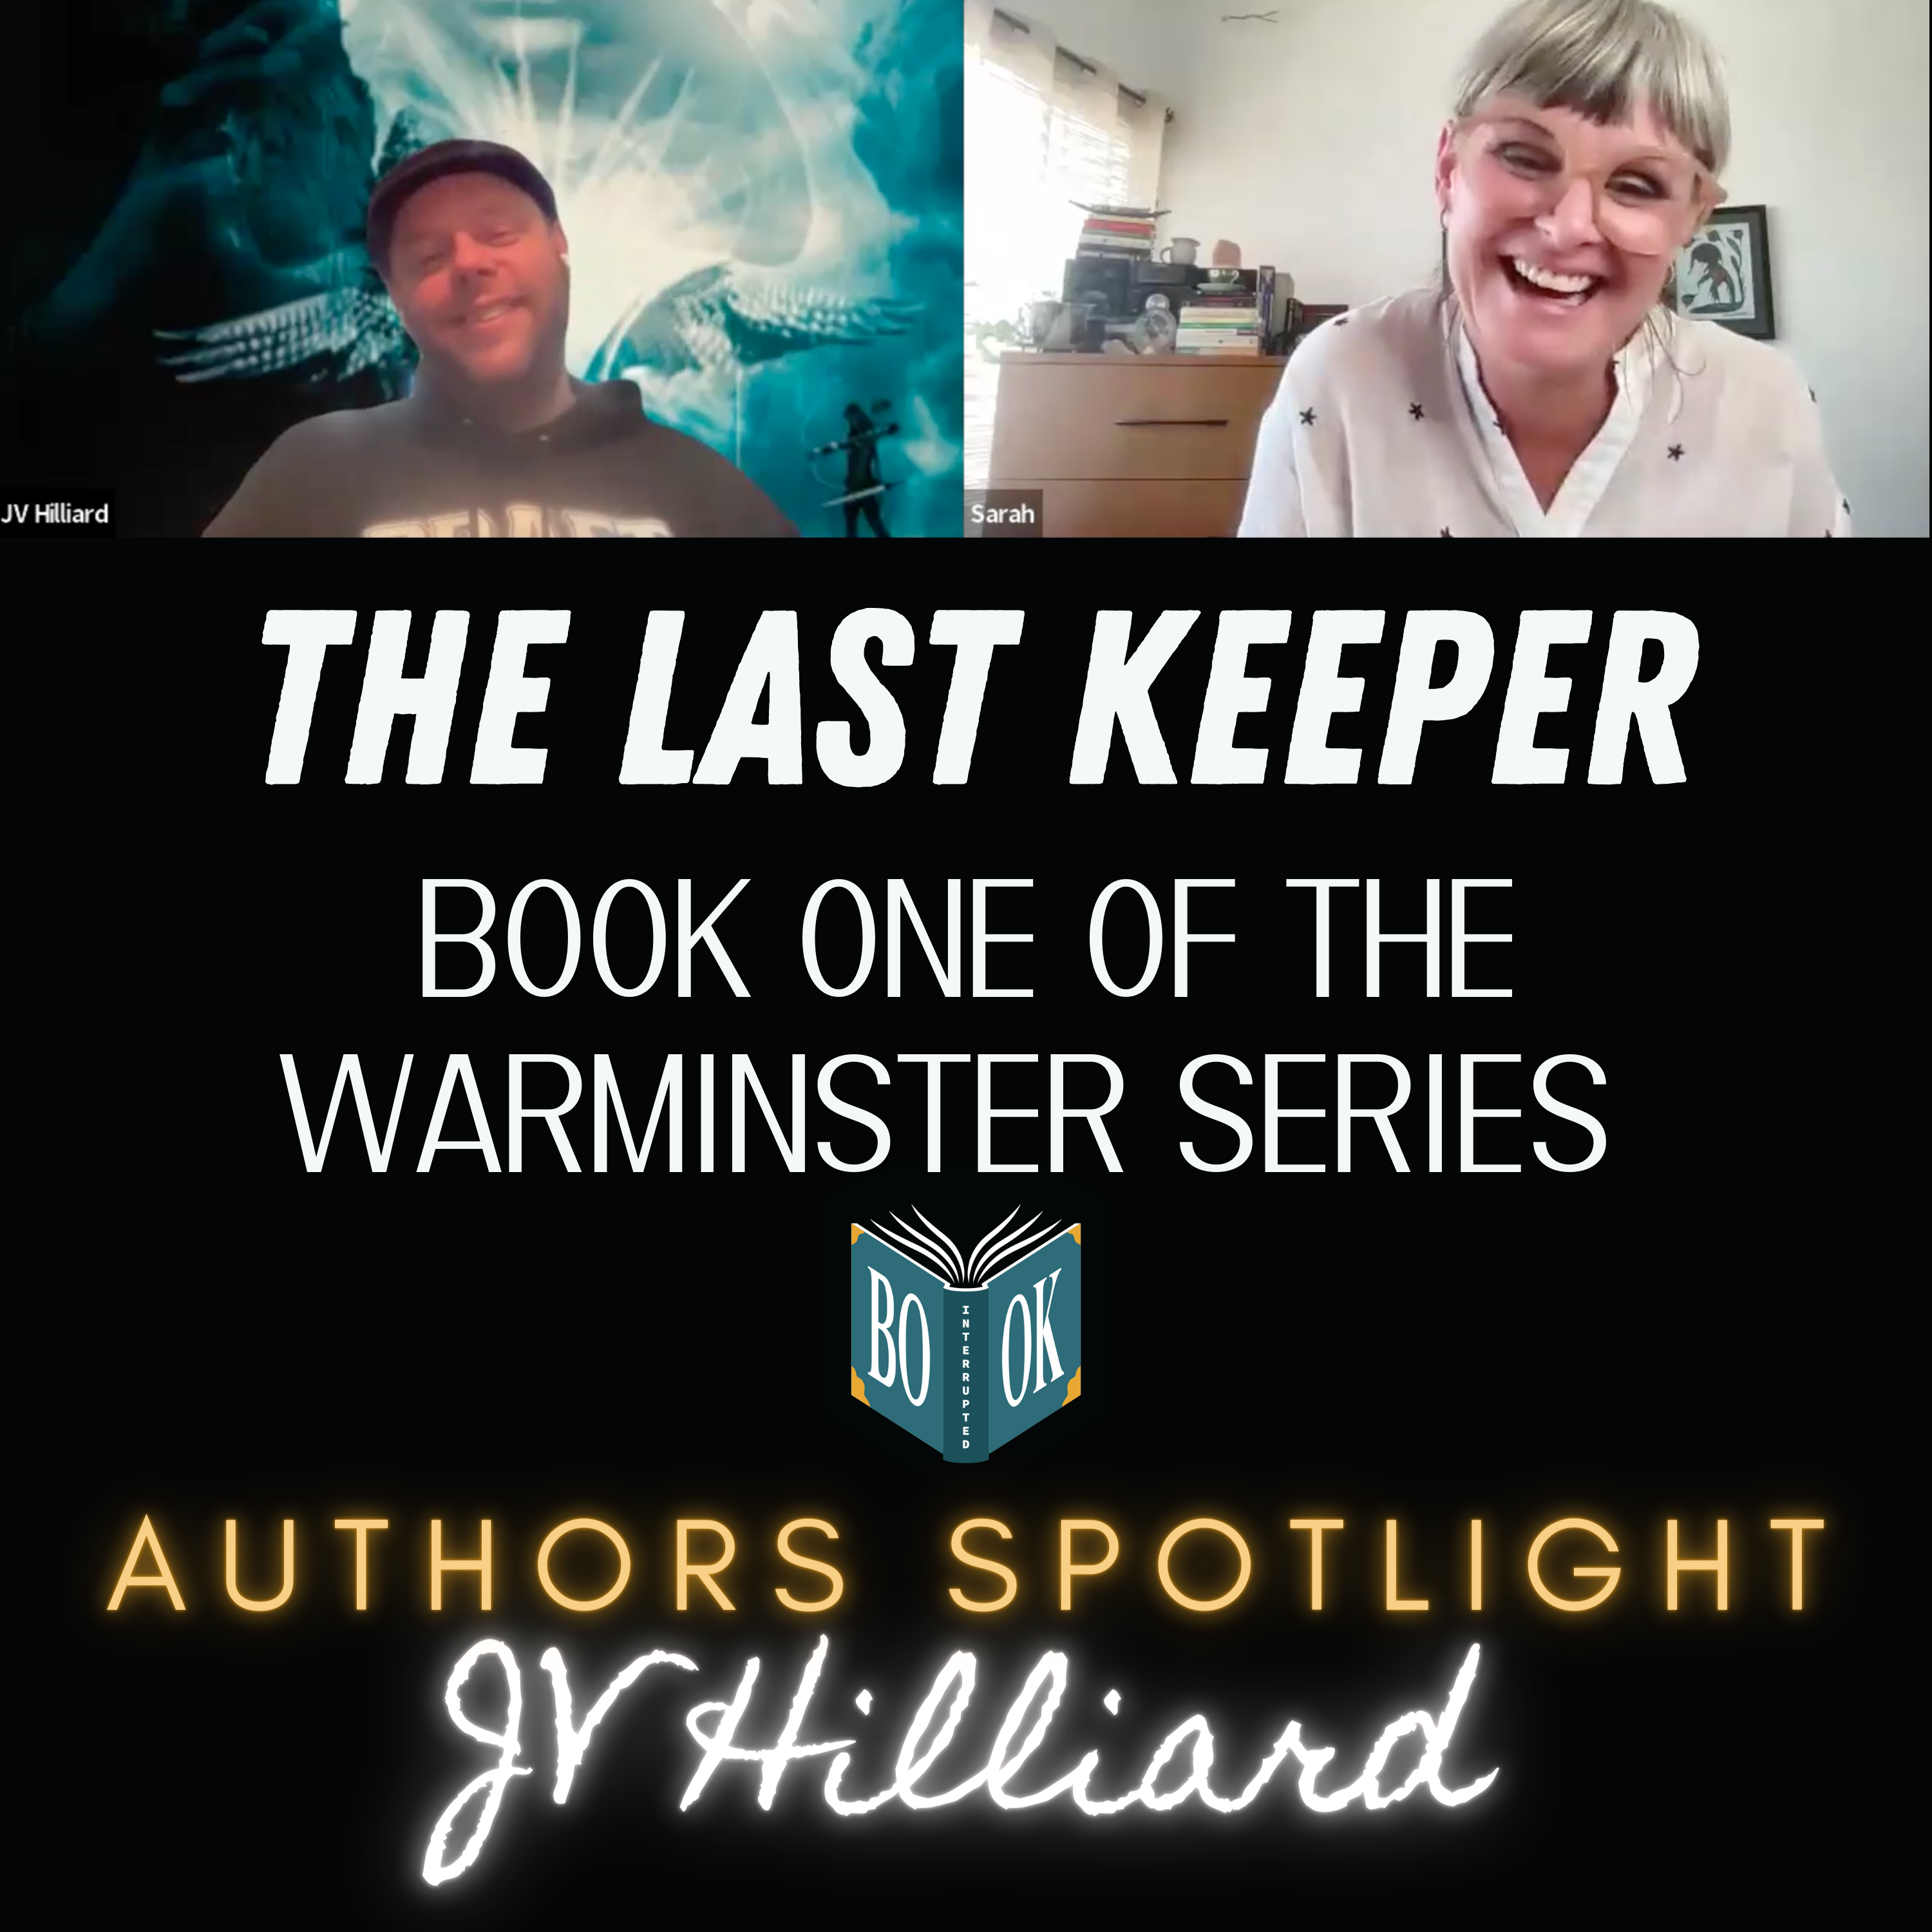 Authors Spotlight with JV Hilliard